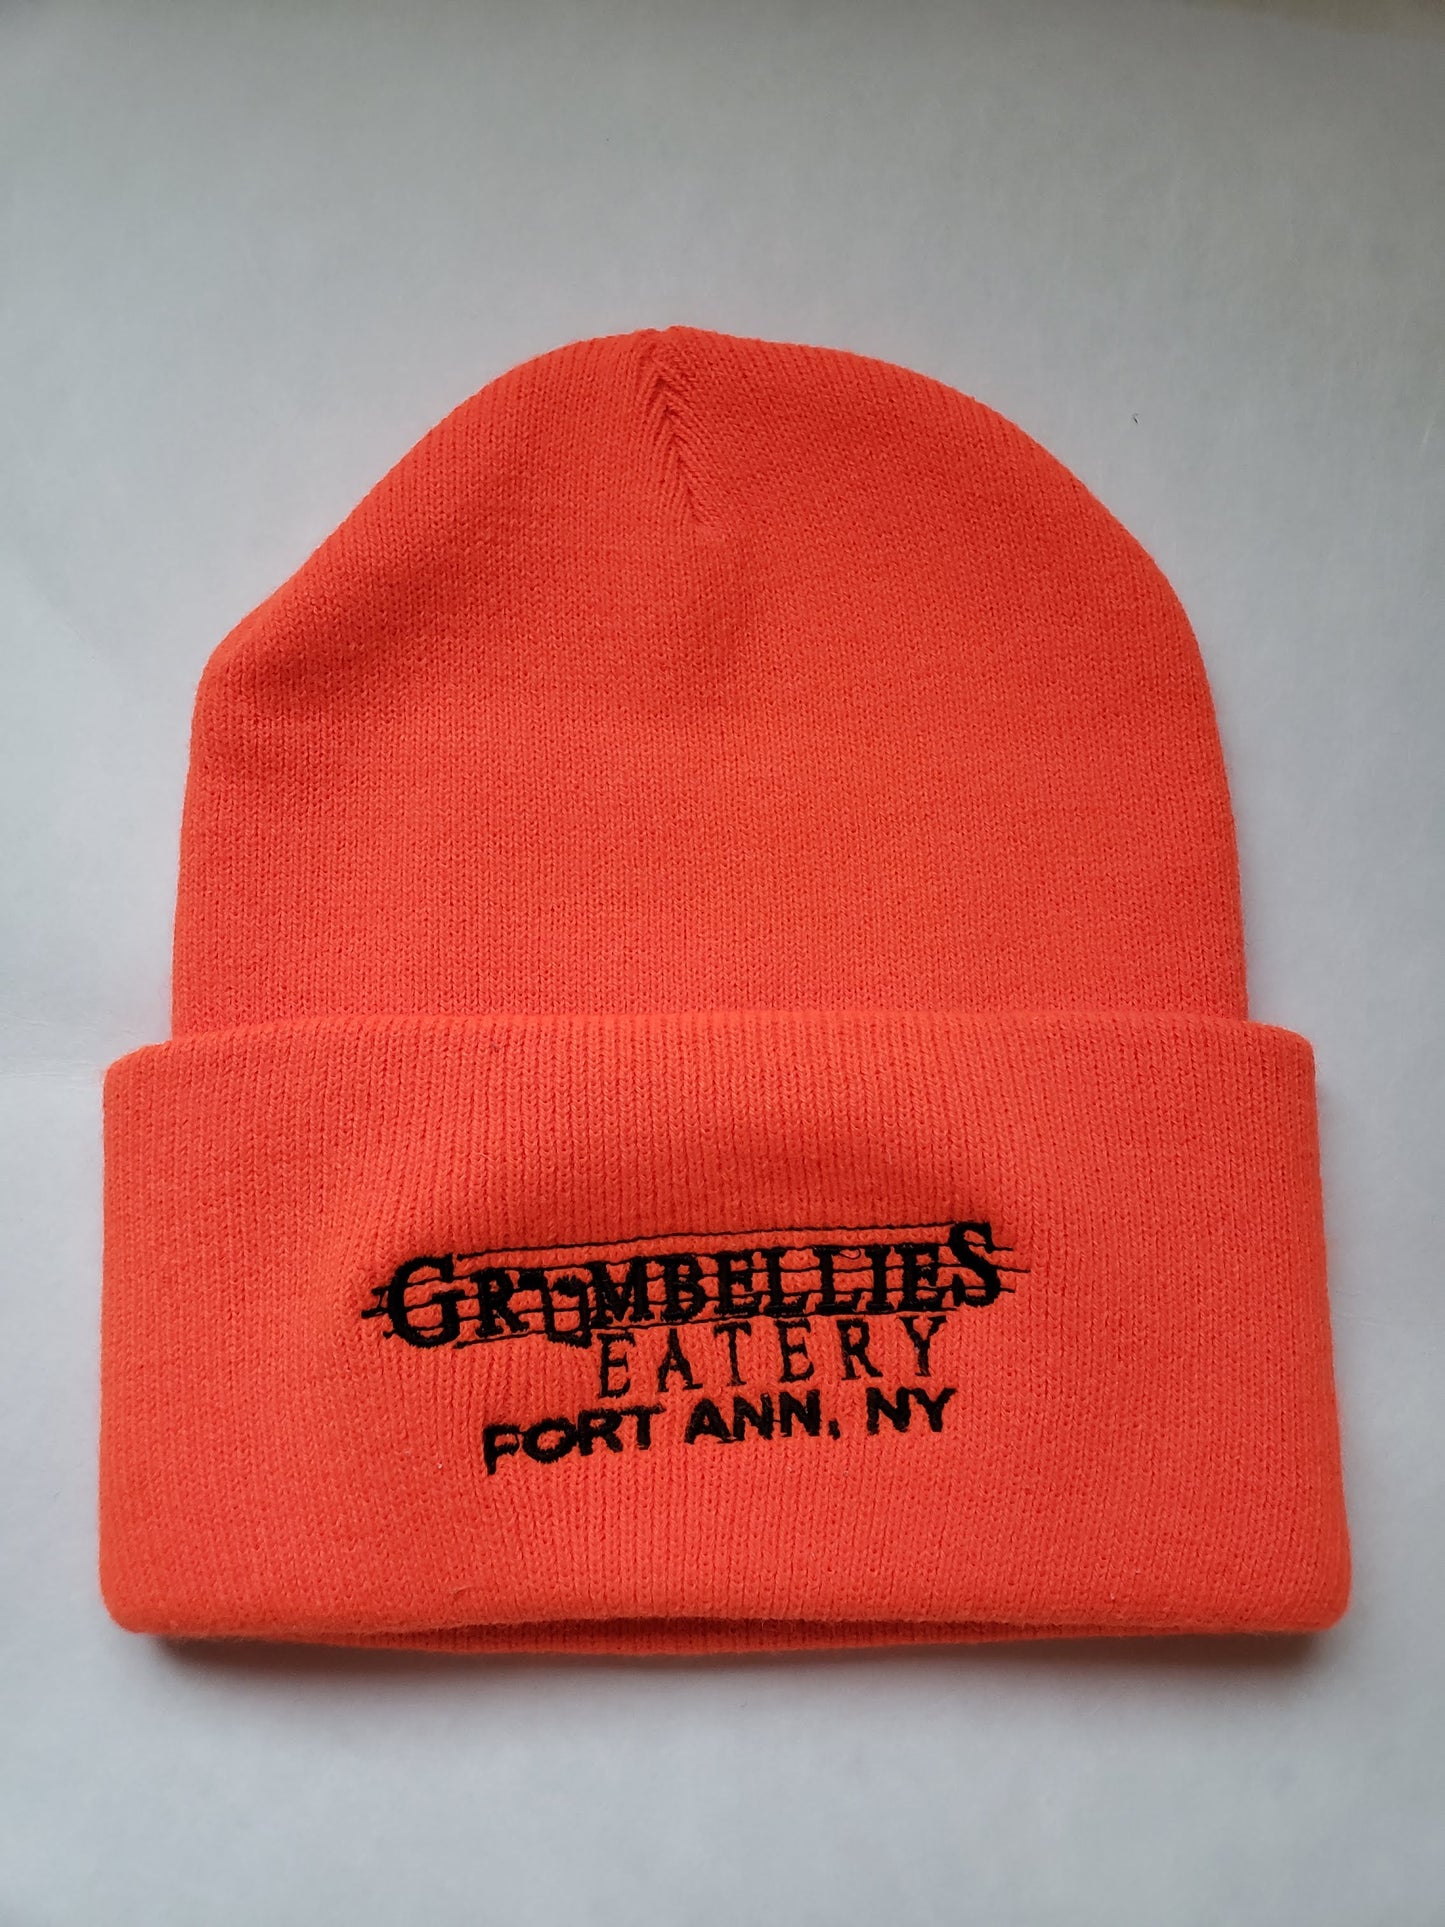 Grumbellies Winter Hats